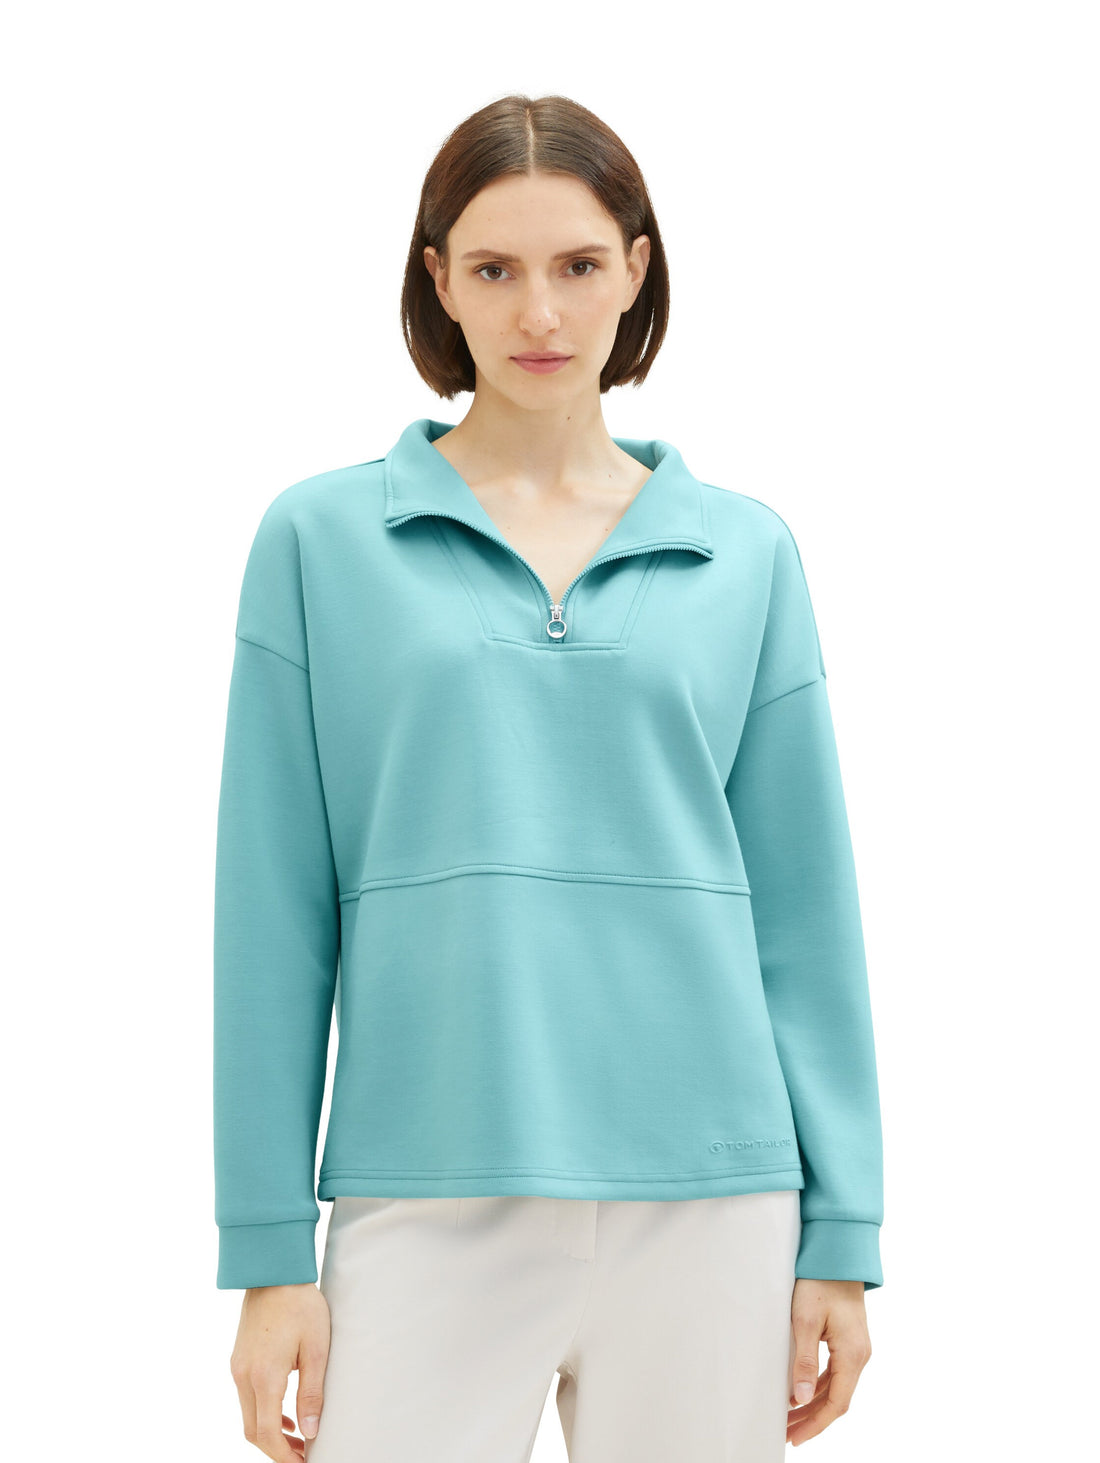 High Collar Sweatshirt With Quarter Zip_1038181_10426_02